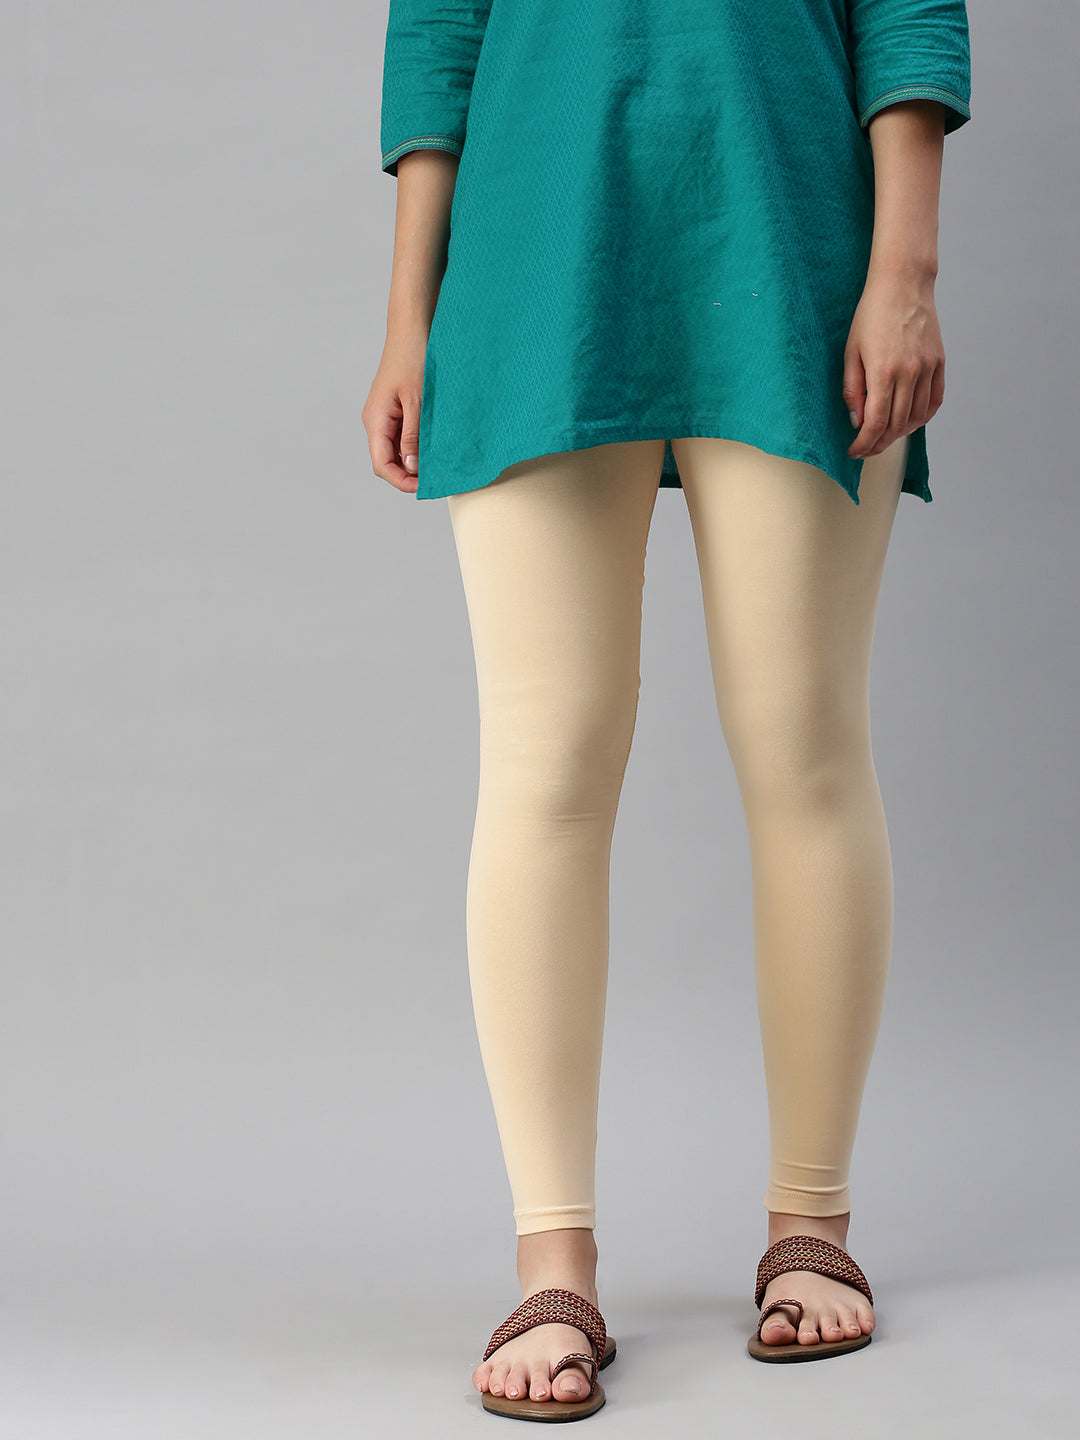 De Moza Women's Ankle Length Leggings Cotton